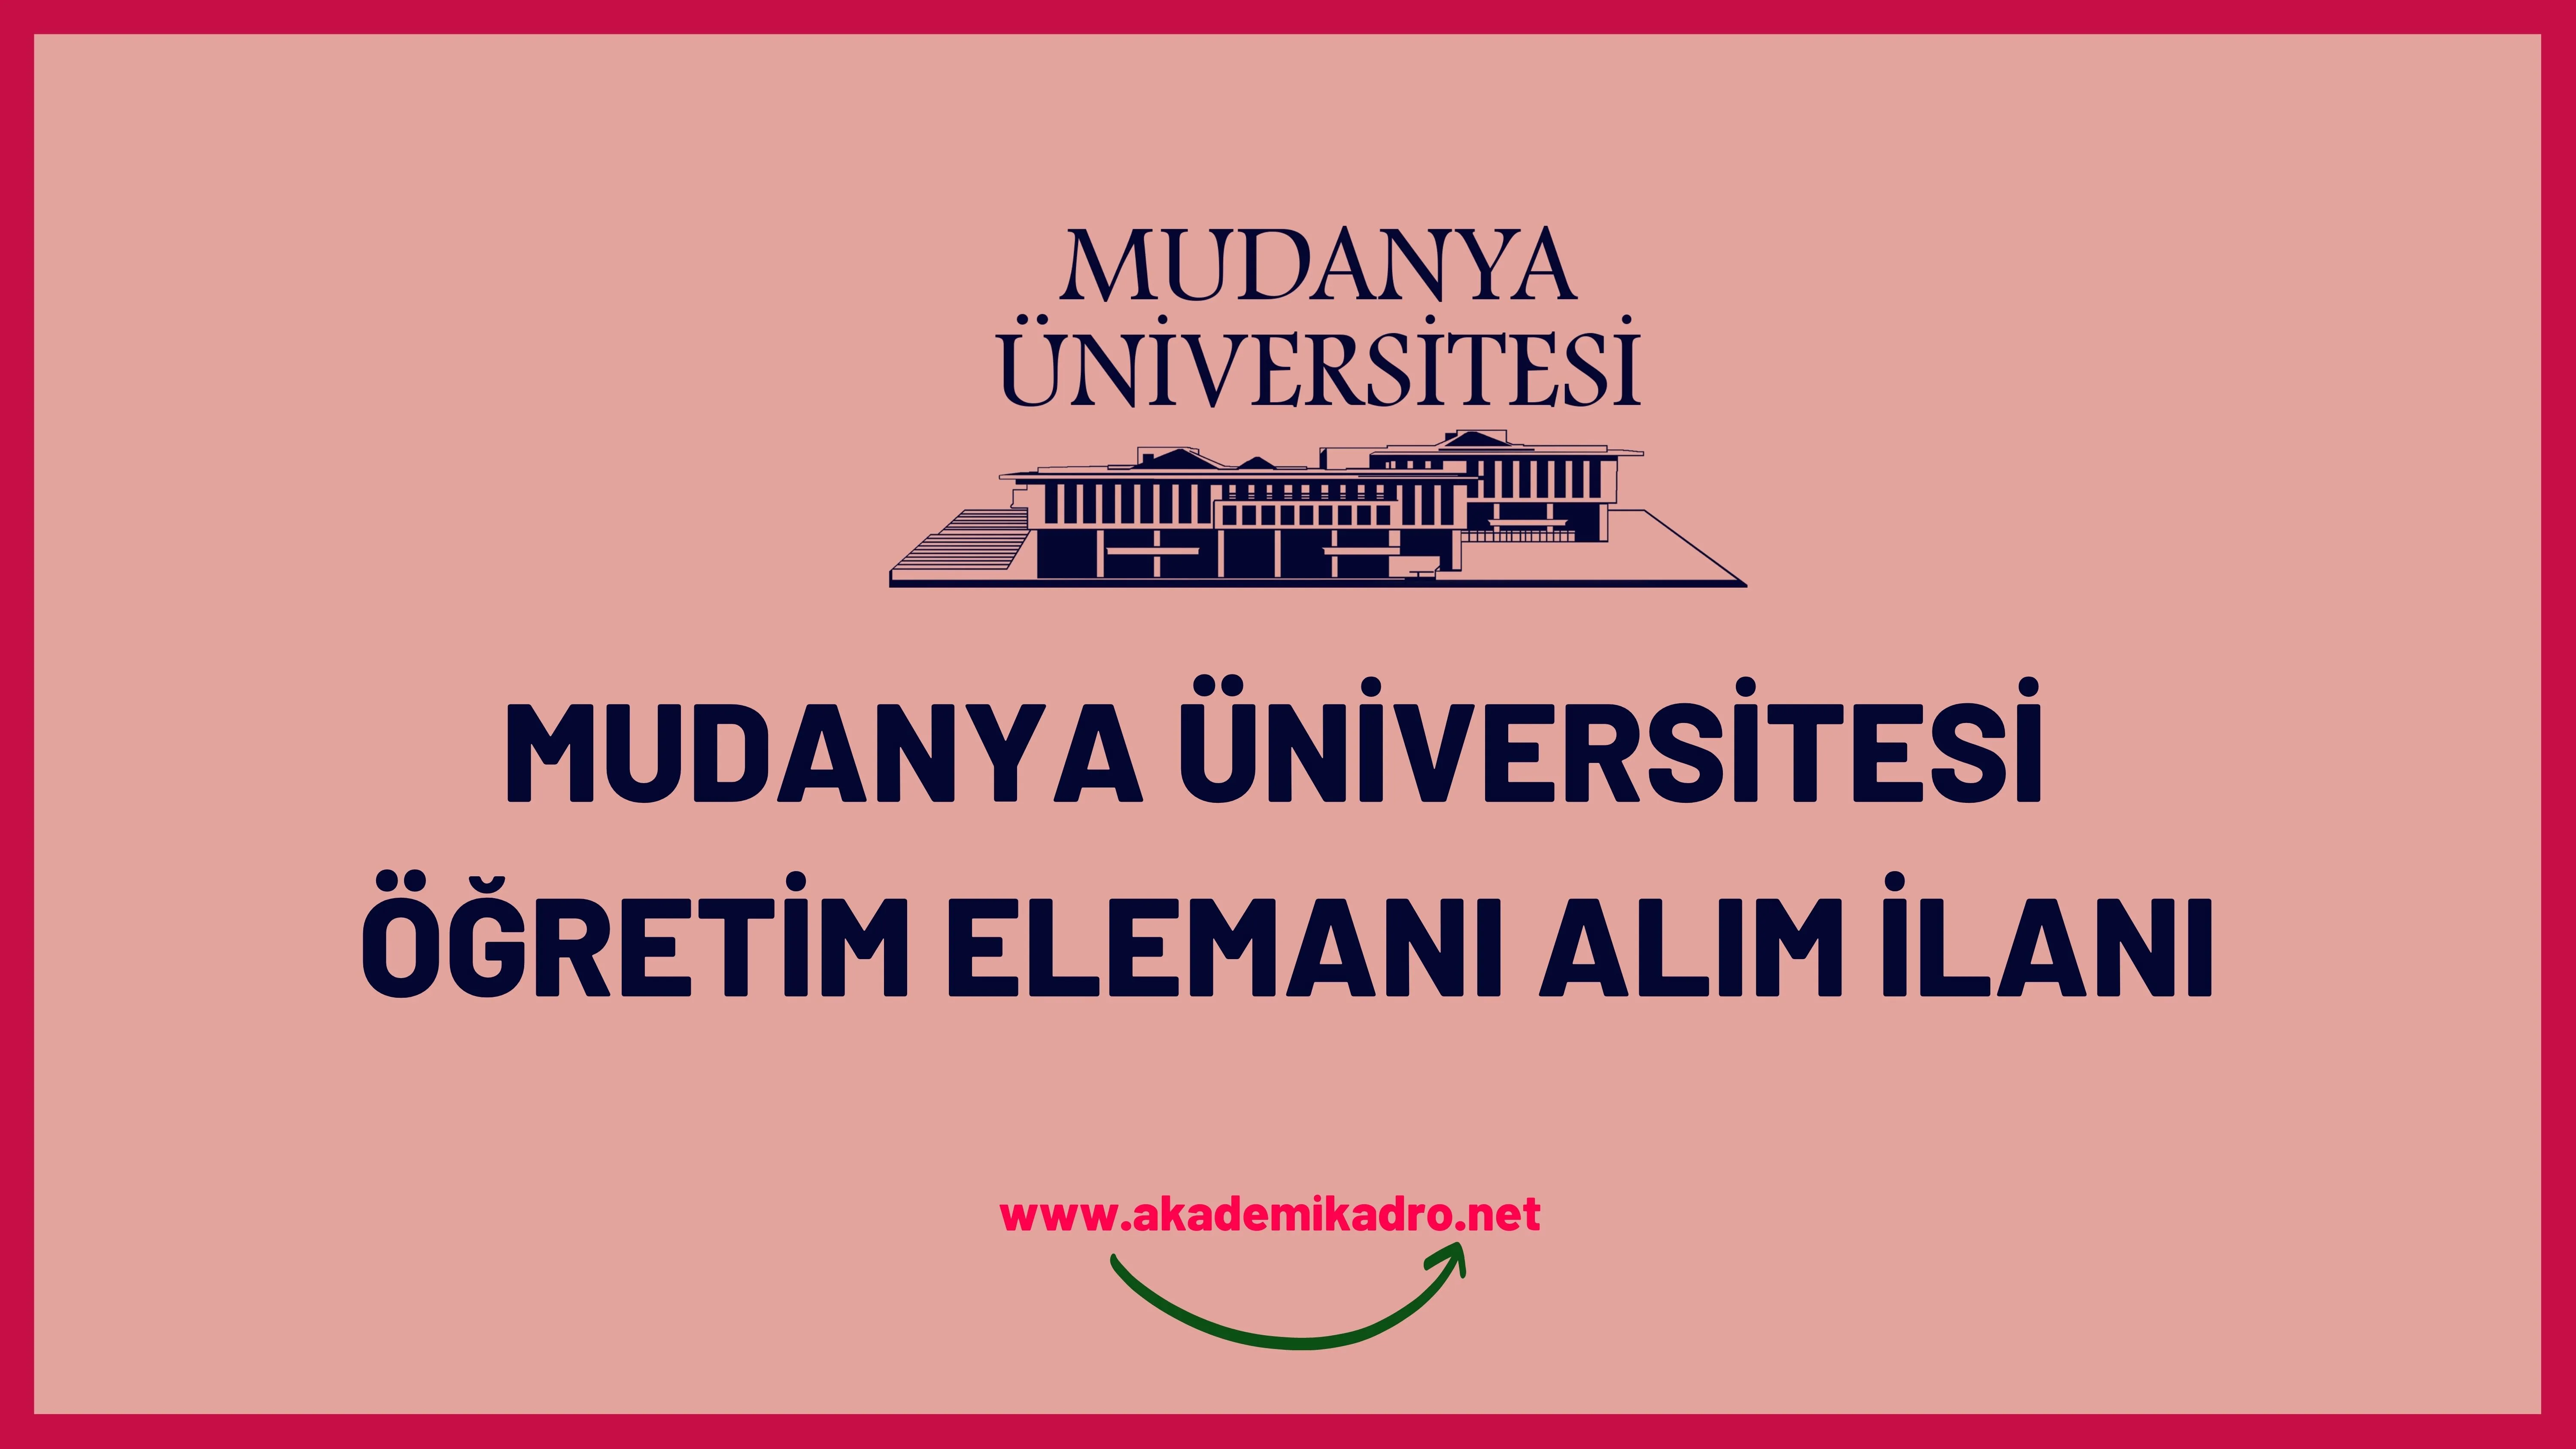 Mudanya Üniversitesi Araştırma görevlisi ve öğretim üyesi alacaktır.